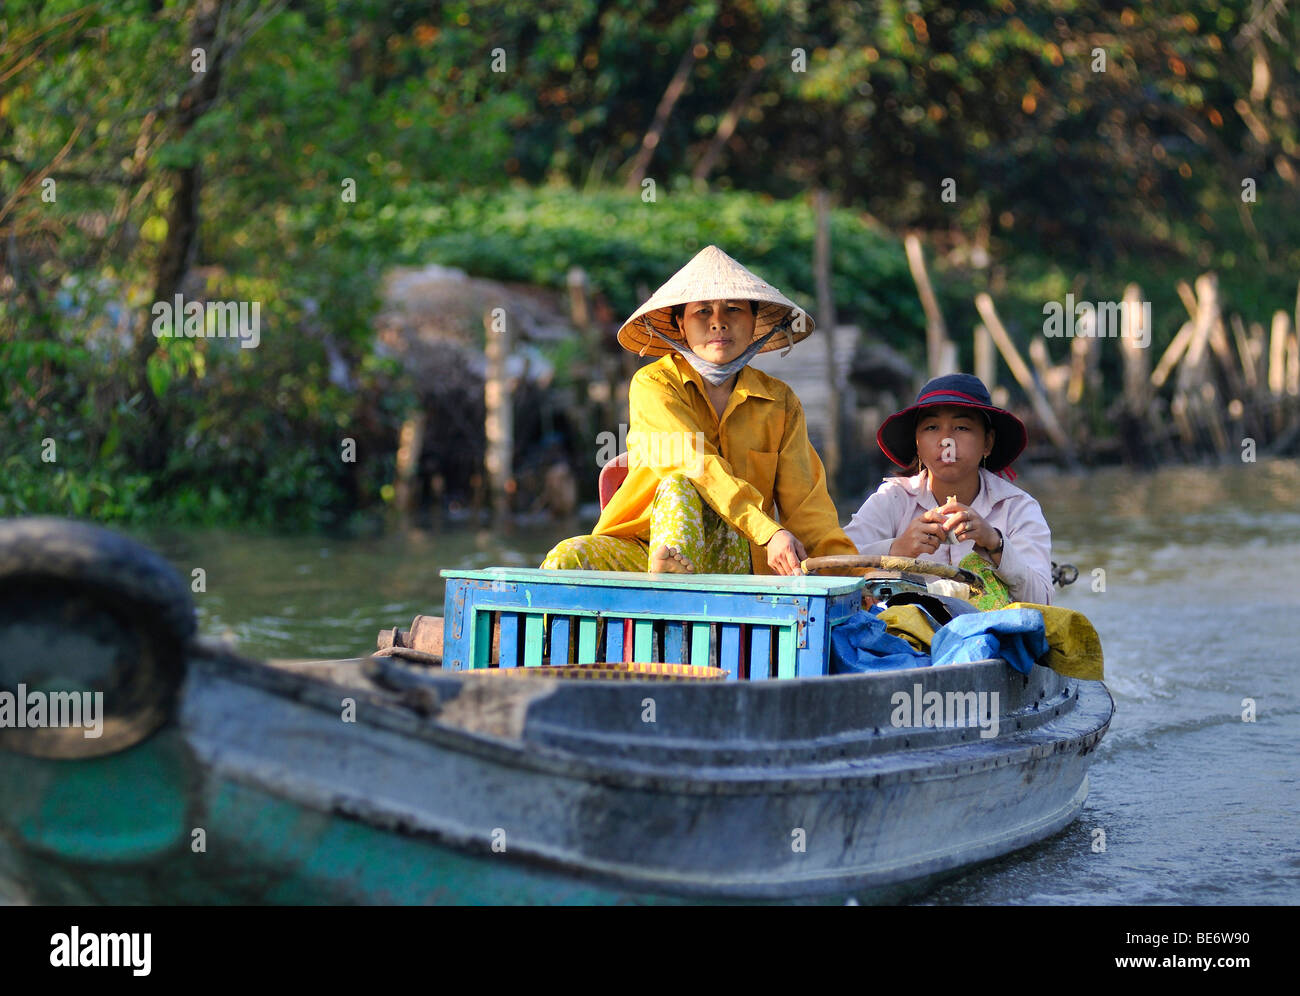 Dos mujeres que llevaban sombreros de paja tradicional vietnamita en un barco en el río Mekong, Vinh Long, en el Delta del Mekong, Vietnam, Asia Foto de stock